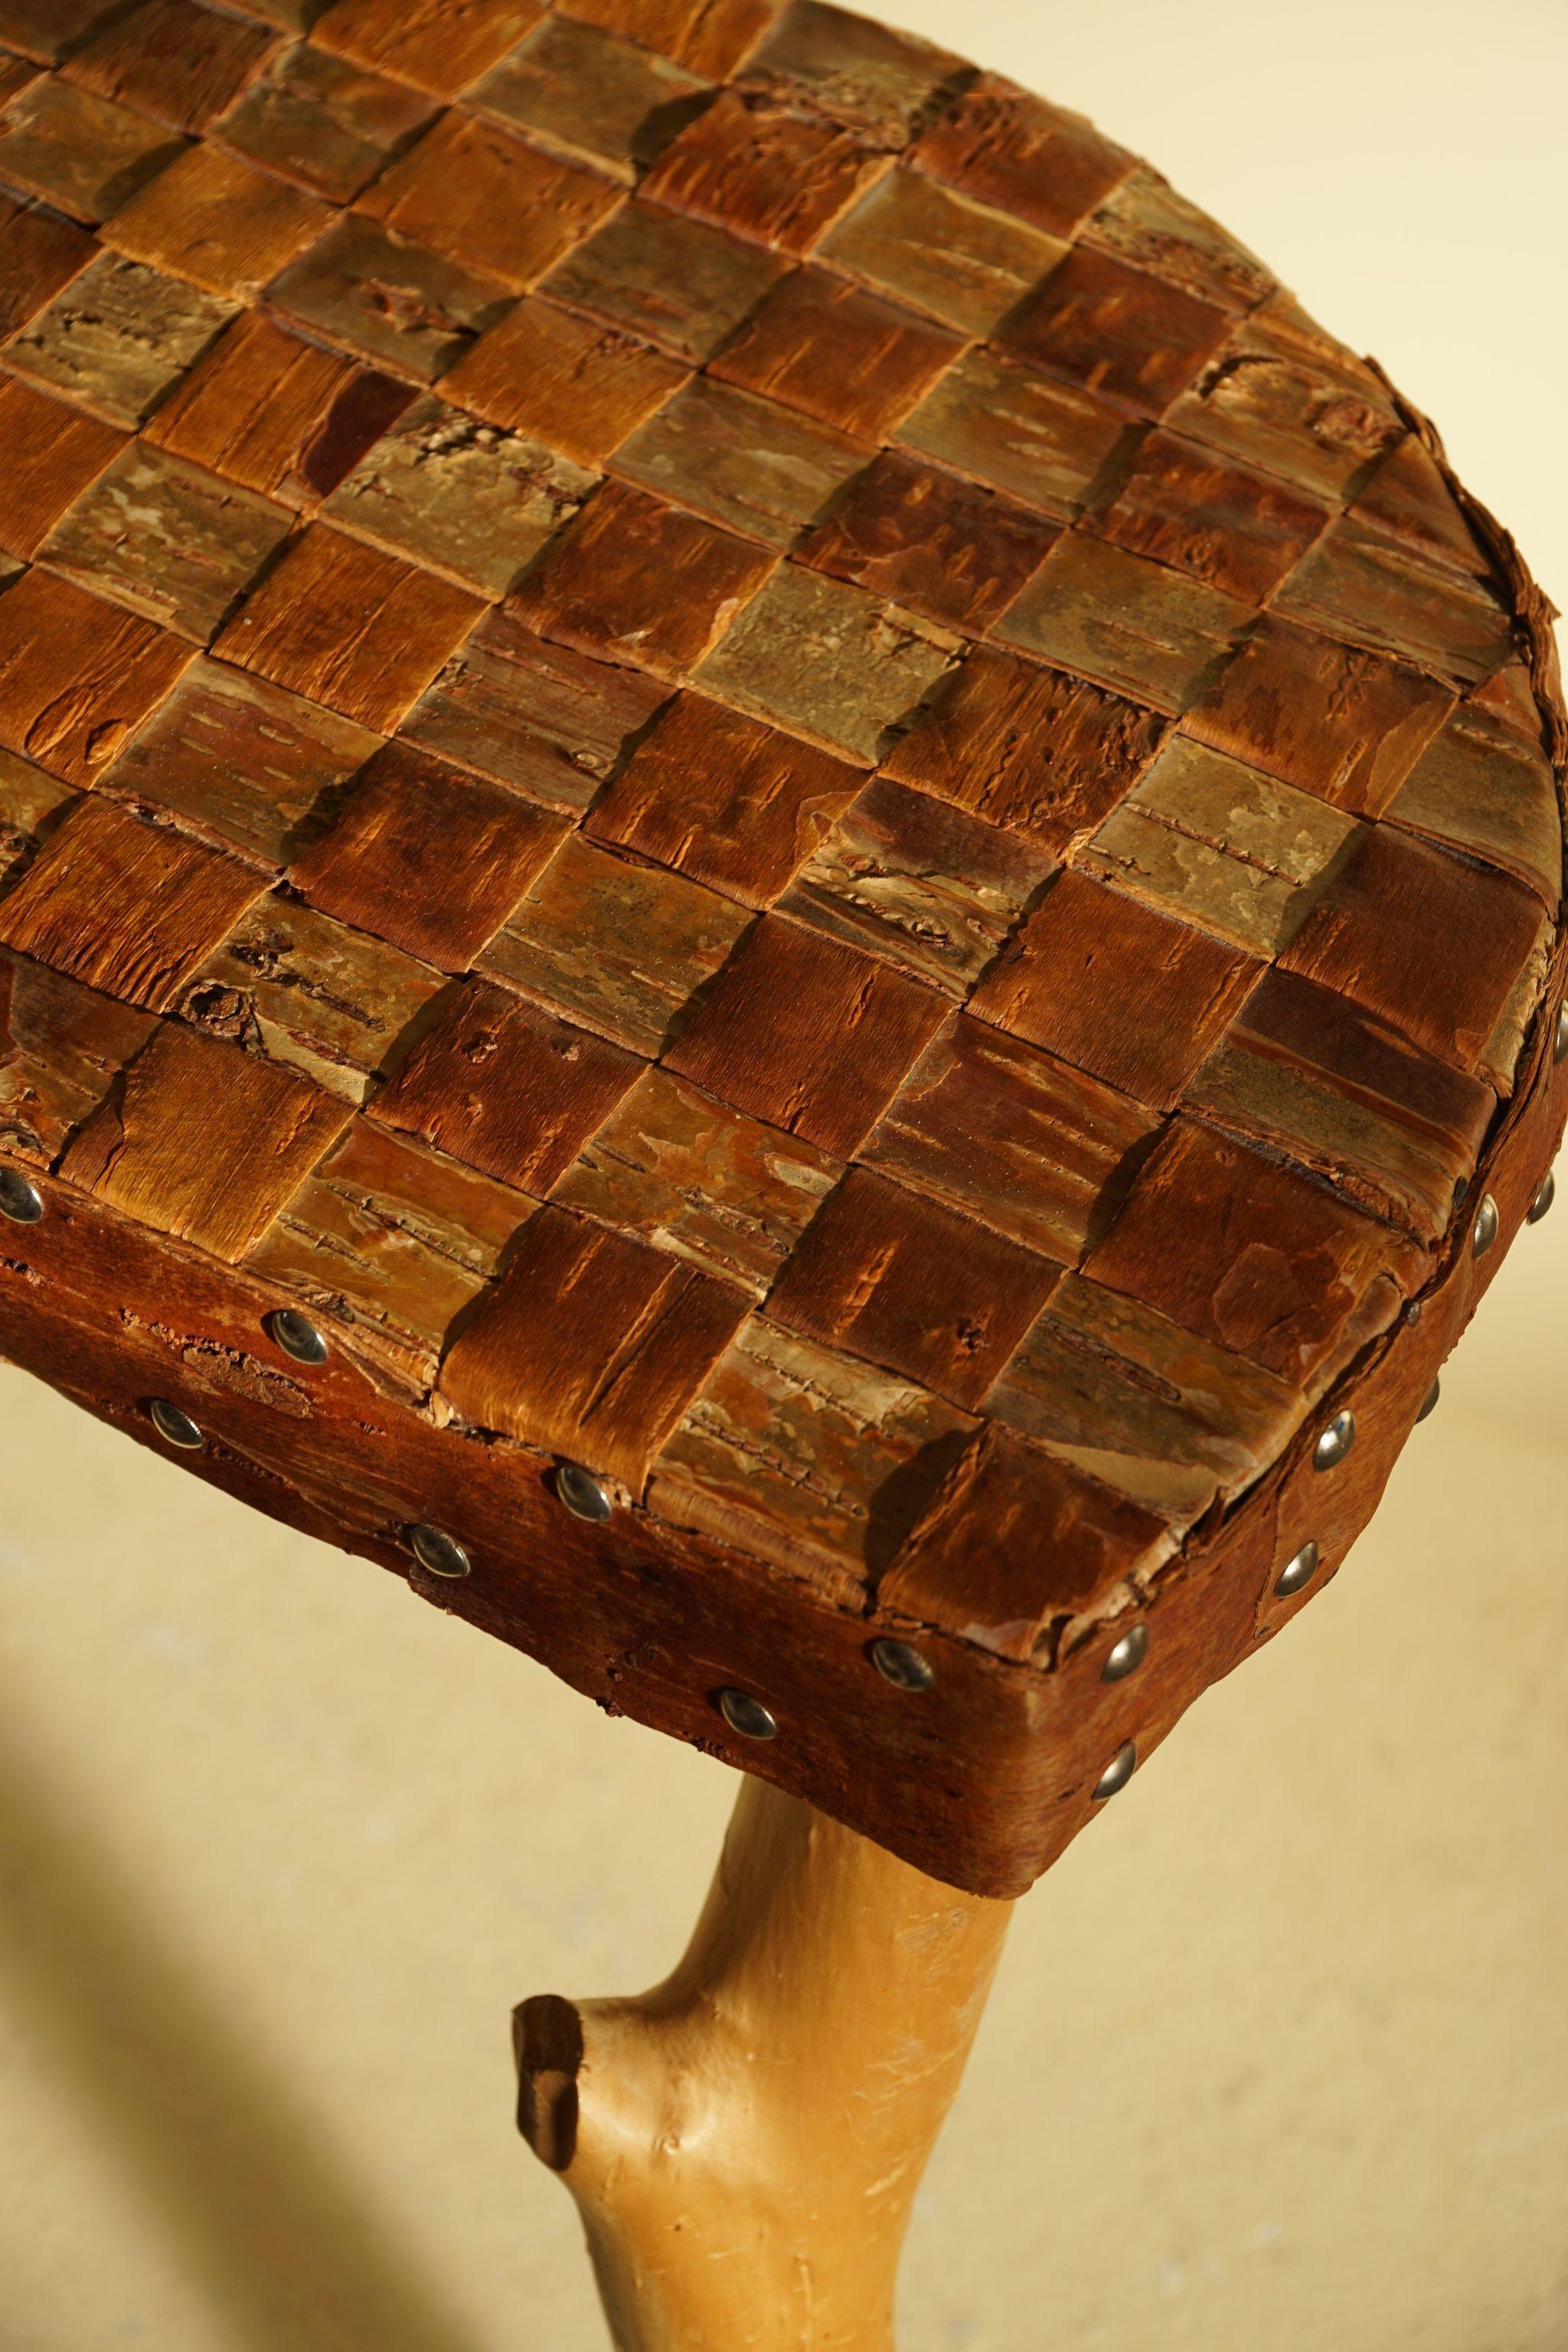 Tabouret tripode scandinave décoratif en bois avec siège en écorce. 

Ce tabouret wabi sabi s'adapte à de nombreux types de décors. Un style d'intérieur moderne, scandinave ou Art déco.

Un bel objet vintage avec une belle patine.

